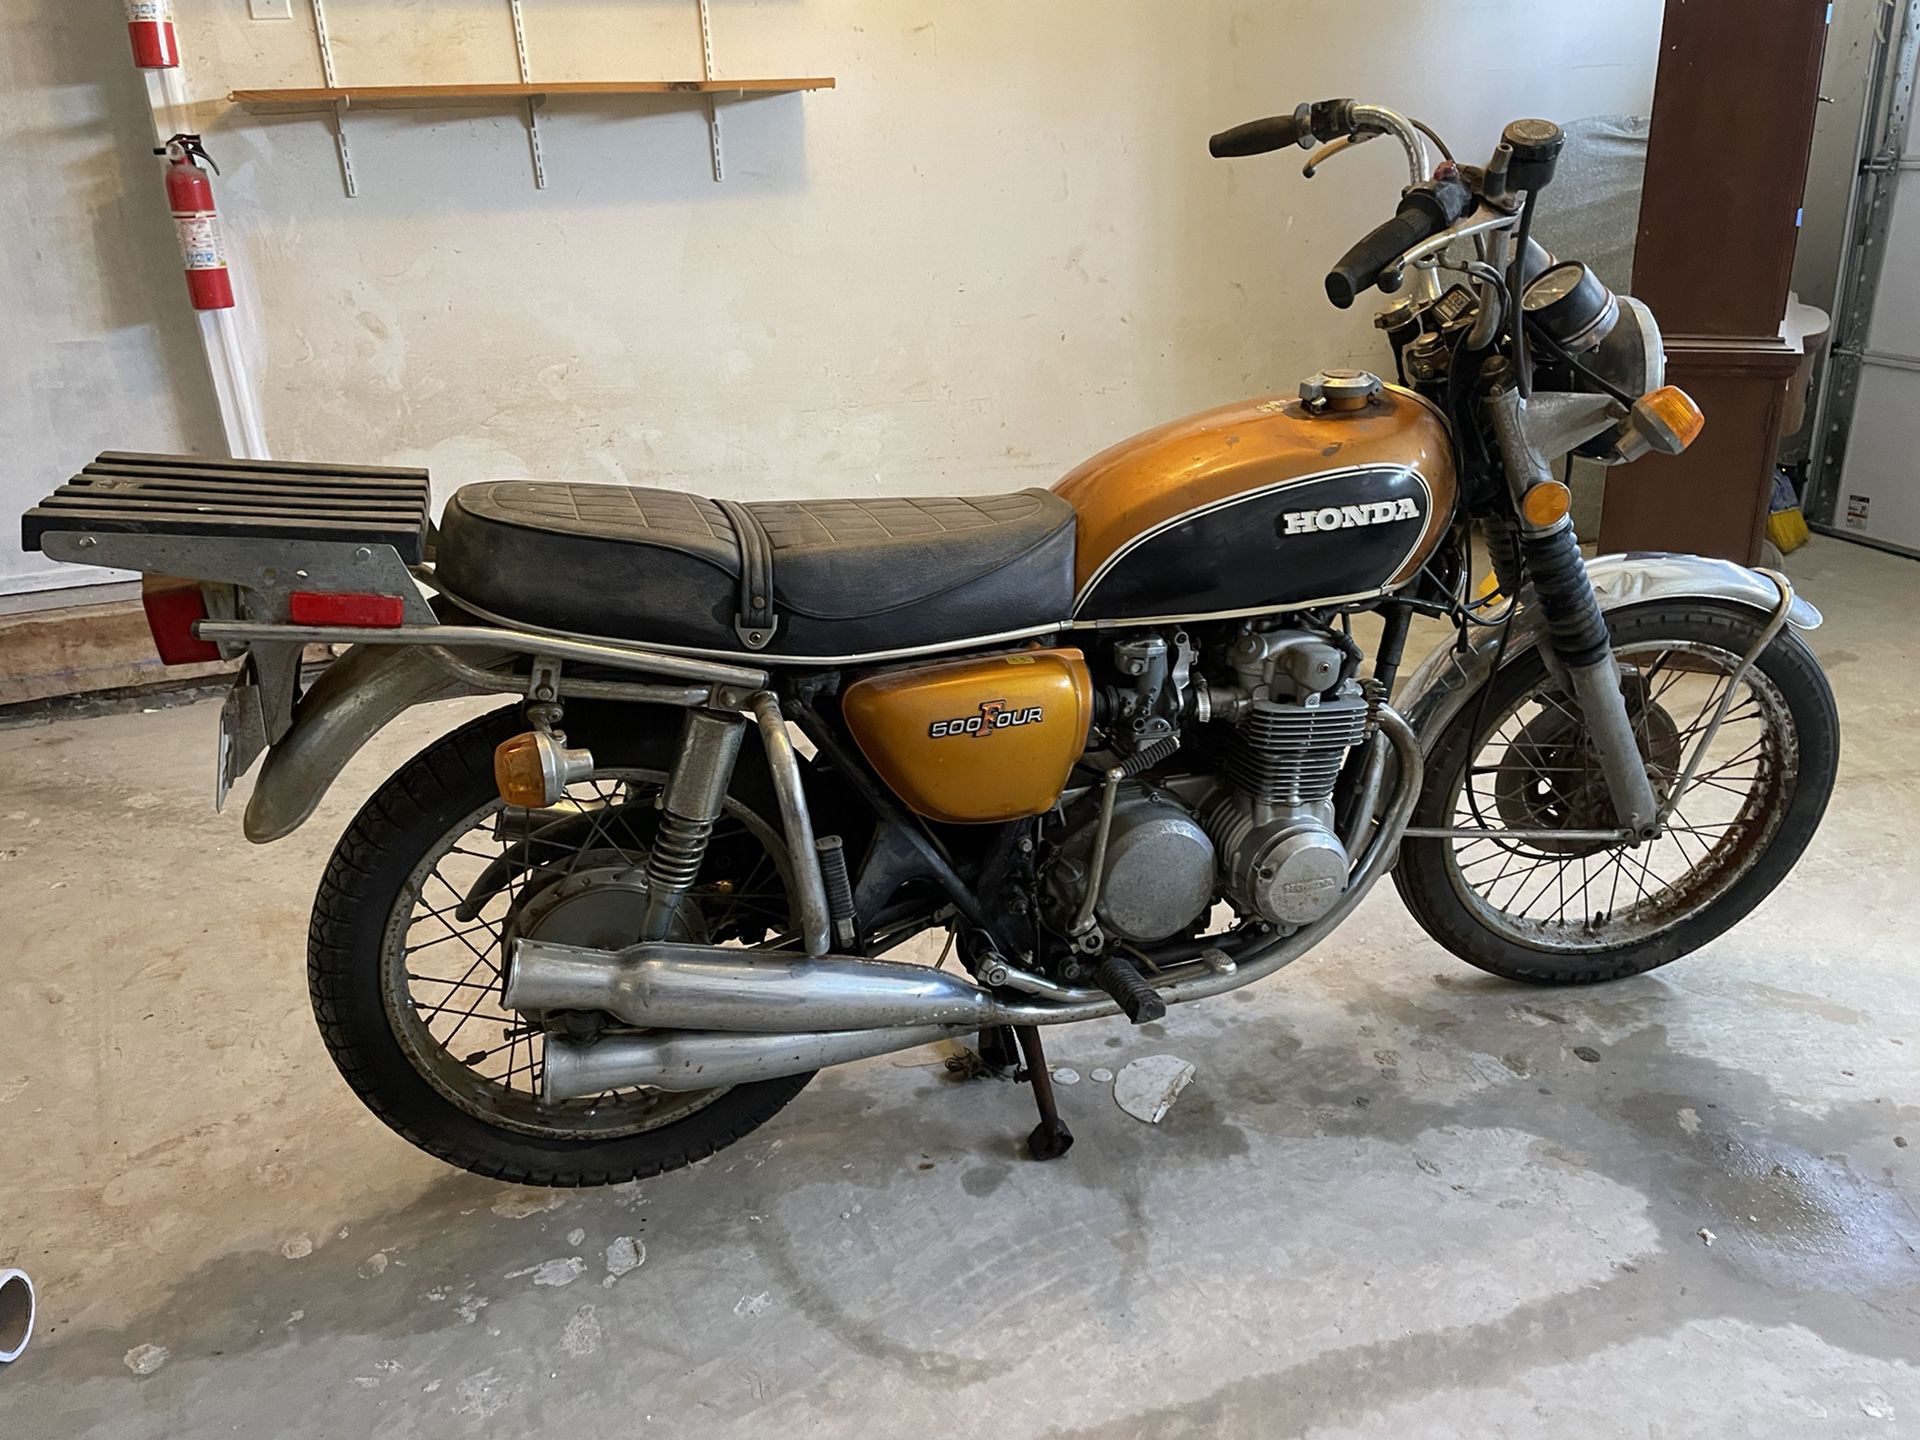 used motorcycle Honda